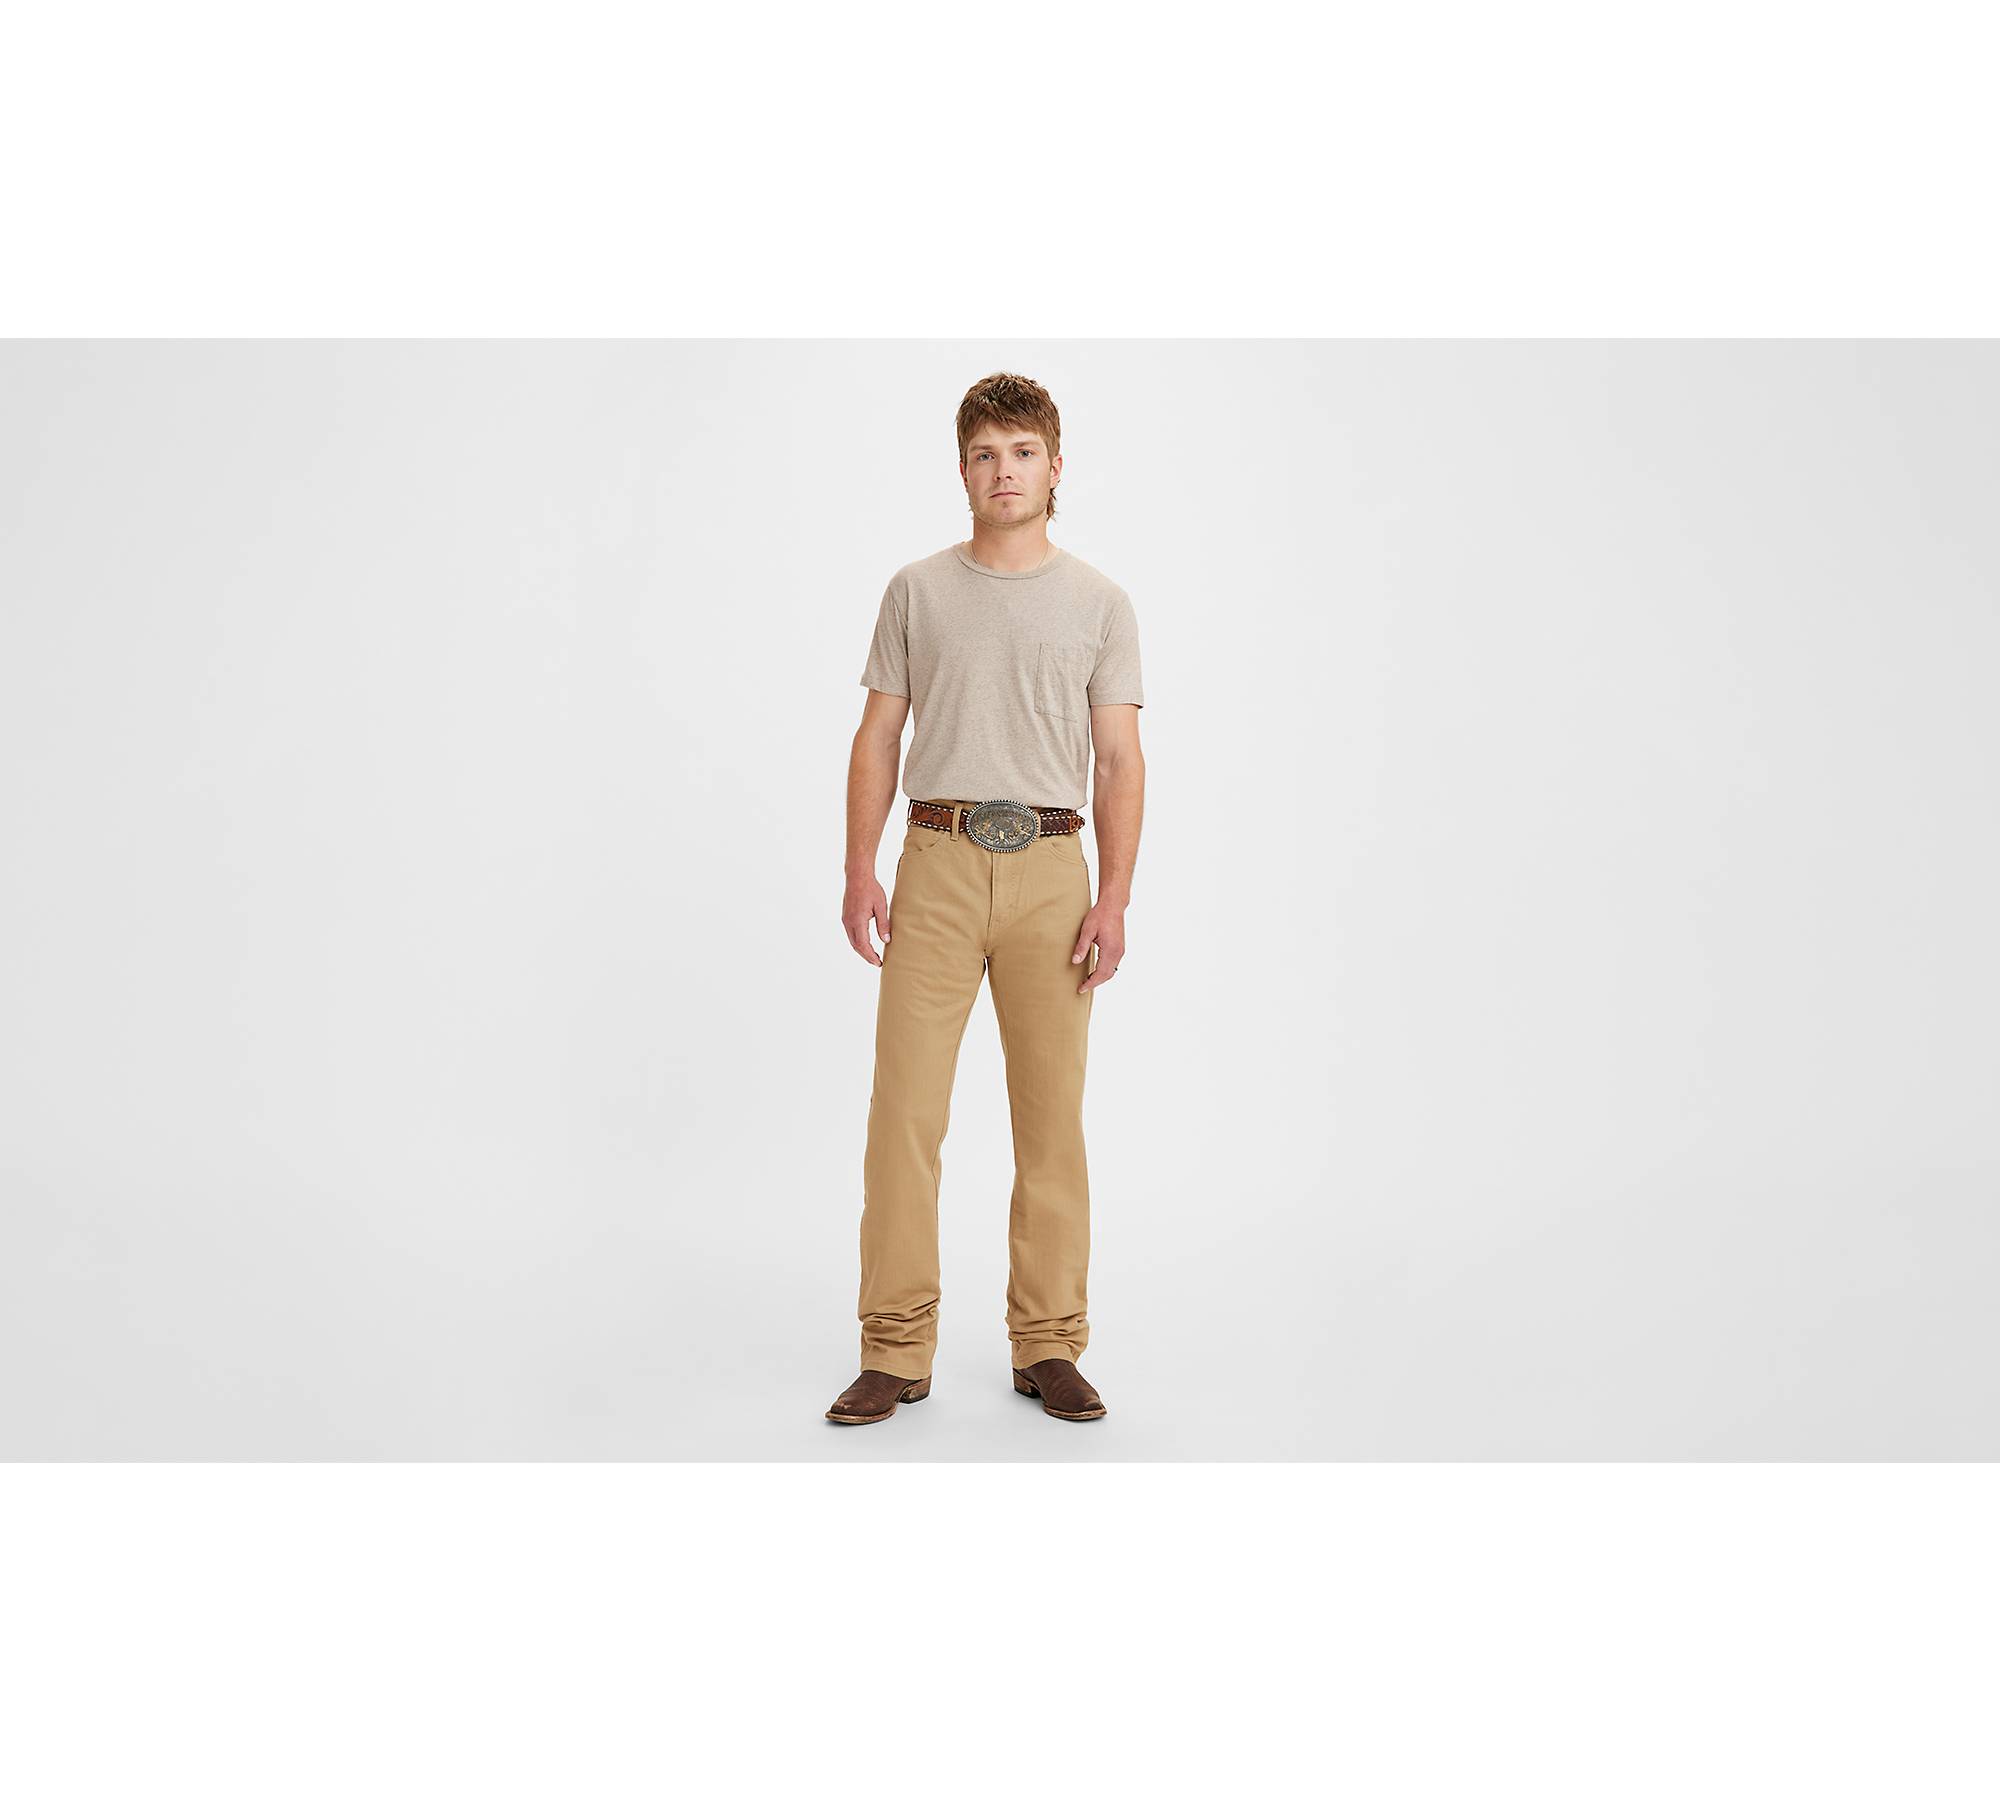 Western Fit Men's Pants - Brown